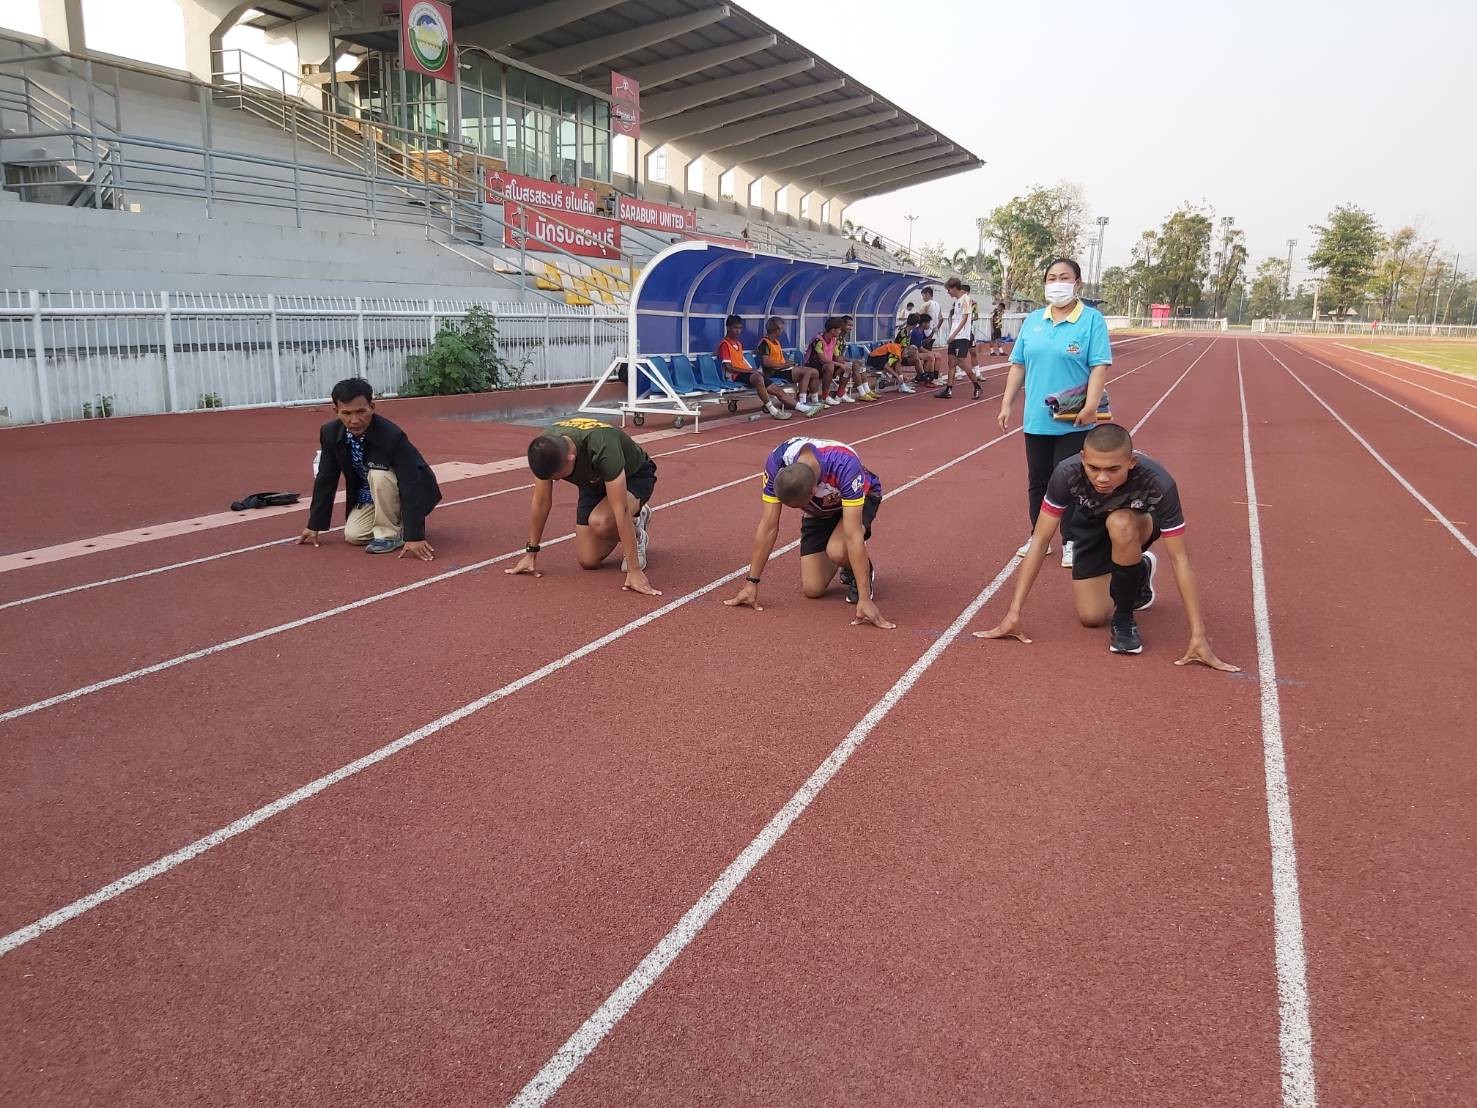 เมื่อ-021600-ก-พ-66-นศ-กศน-กรมนักเรียนและ-นศ-กองพันบริการร่วมฝึกซ้อมเตรียมแข่งขันกรีฑา-ณ-สนาม-กีฬา-อบจ-สระบุรี